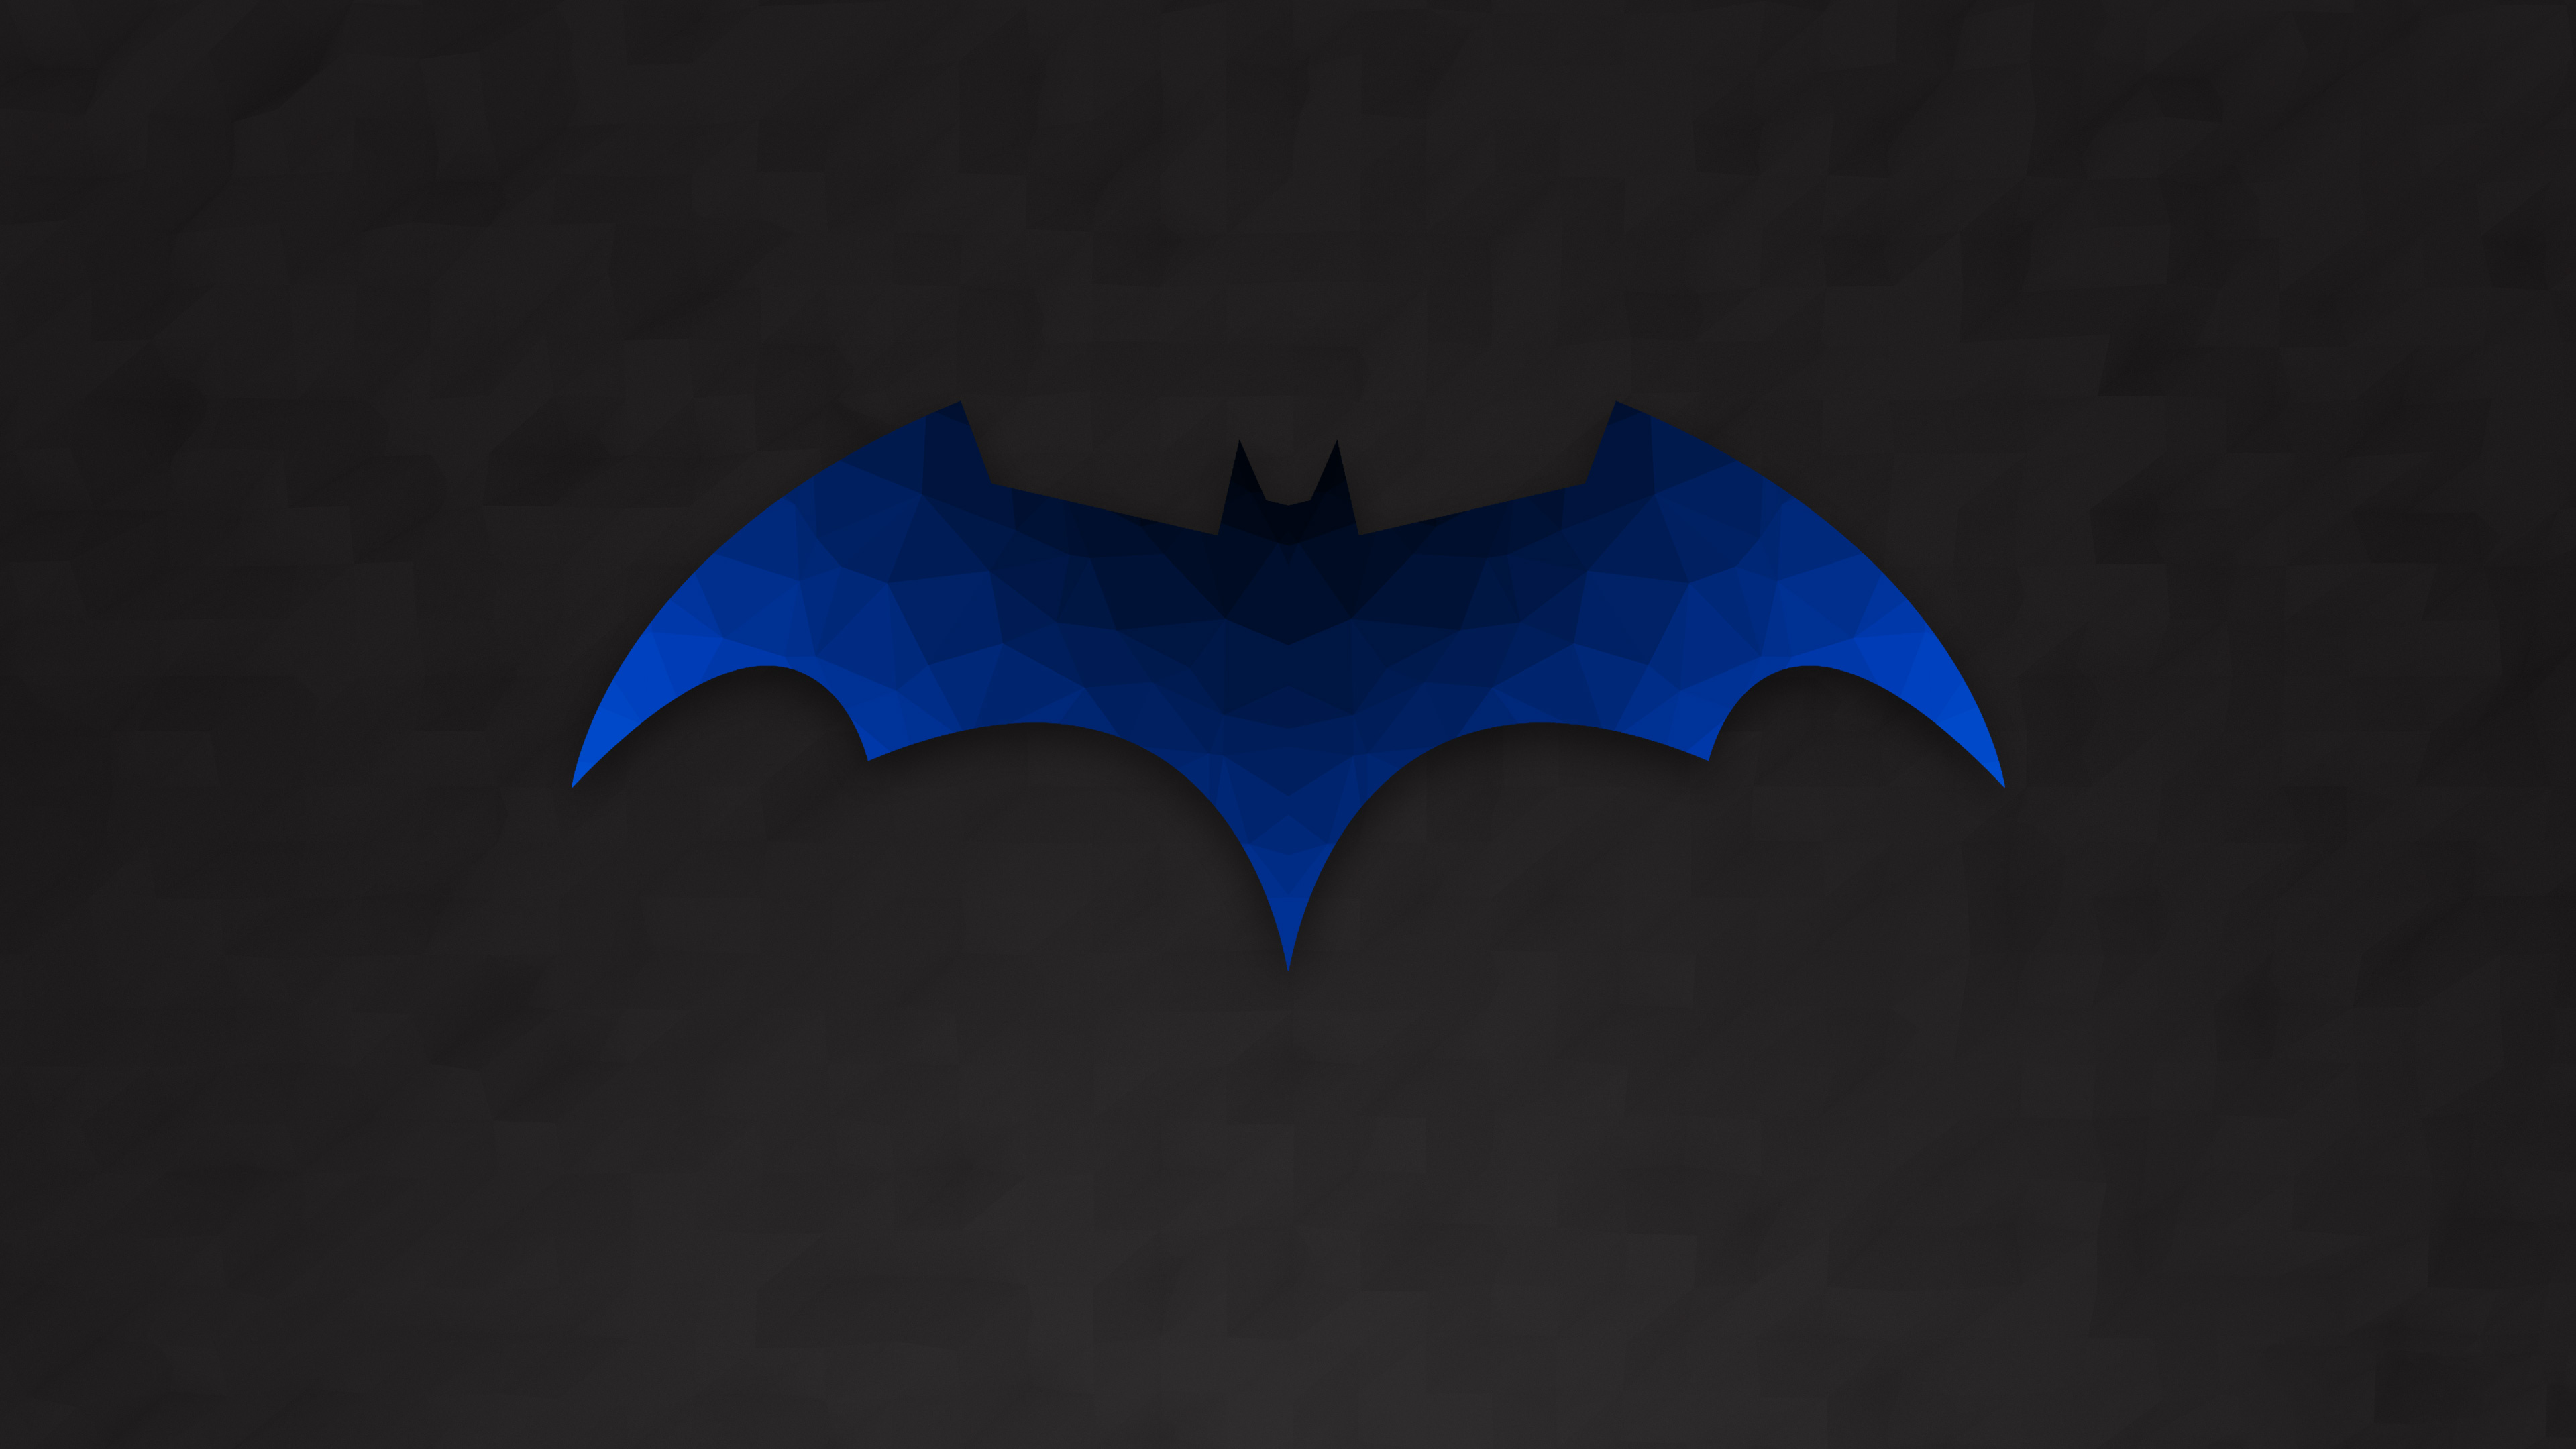 Low Polygon Batman Logo - Bat , HD Wallpaper & Backgrounds